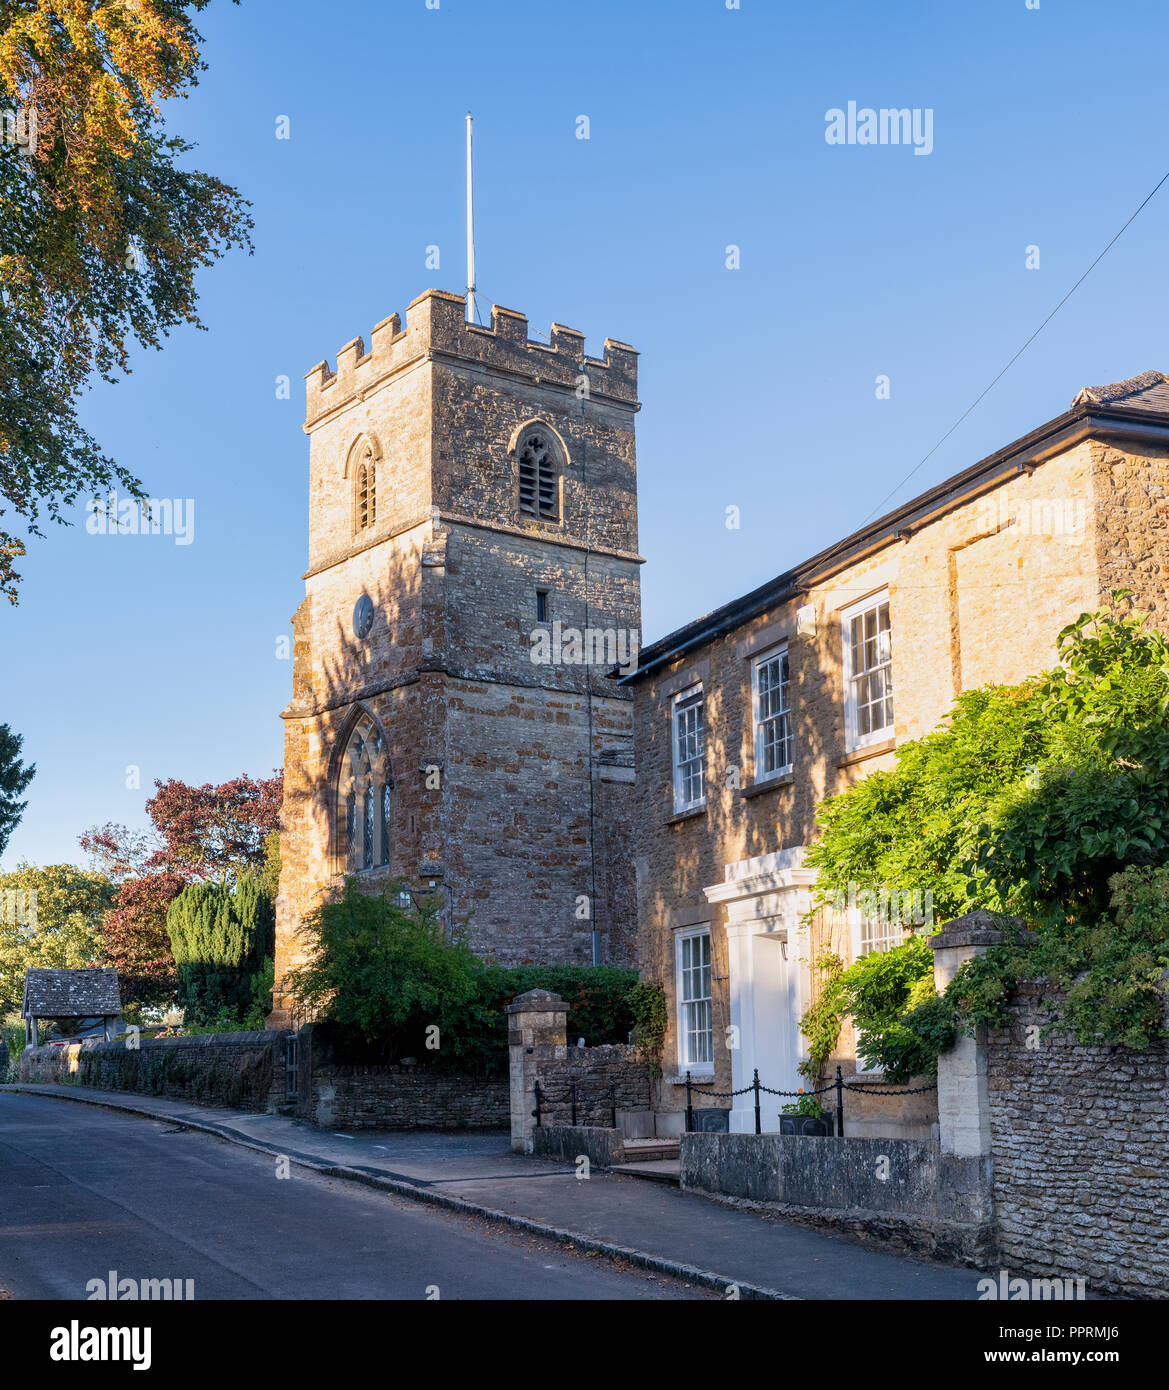 L'église paroissiale de St Martin et cottage dans le village de Worton, Oxfordshire, England, UK Banque D'Images